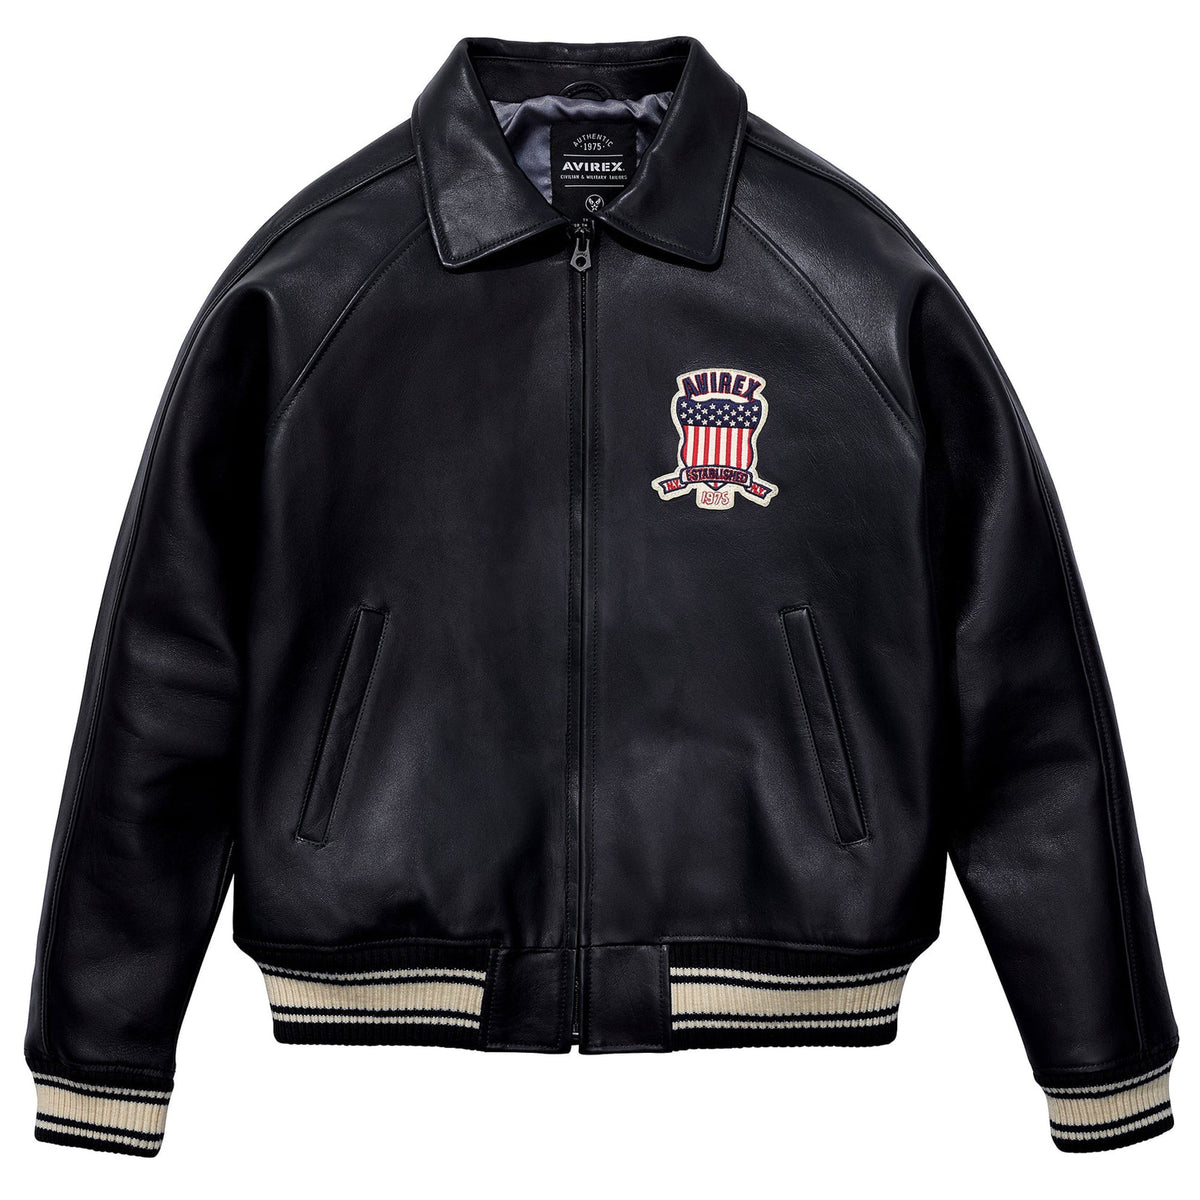 Men's Avirex Leather Jacket Iconic Avirex jacket (Black)